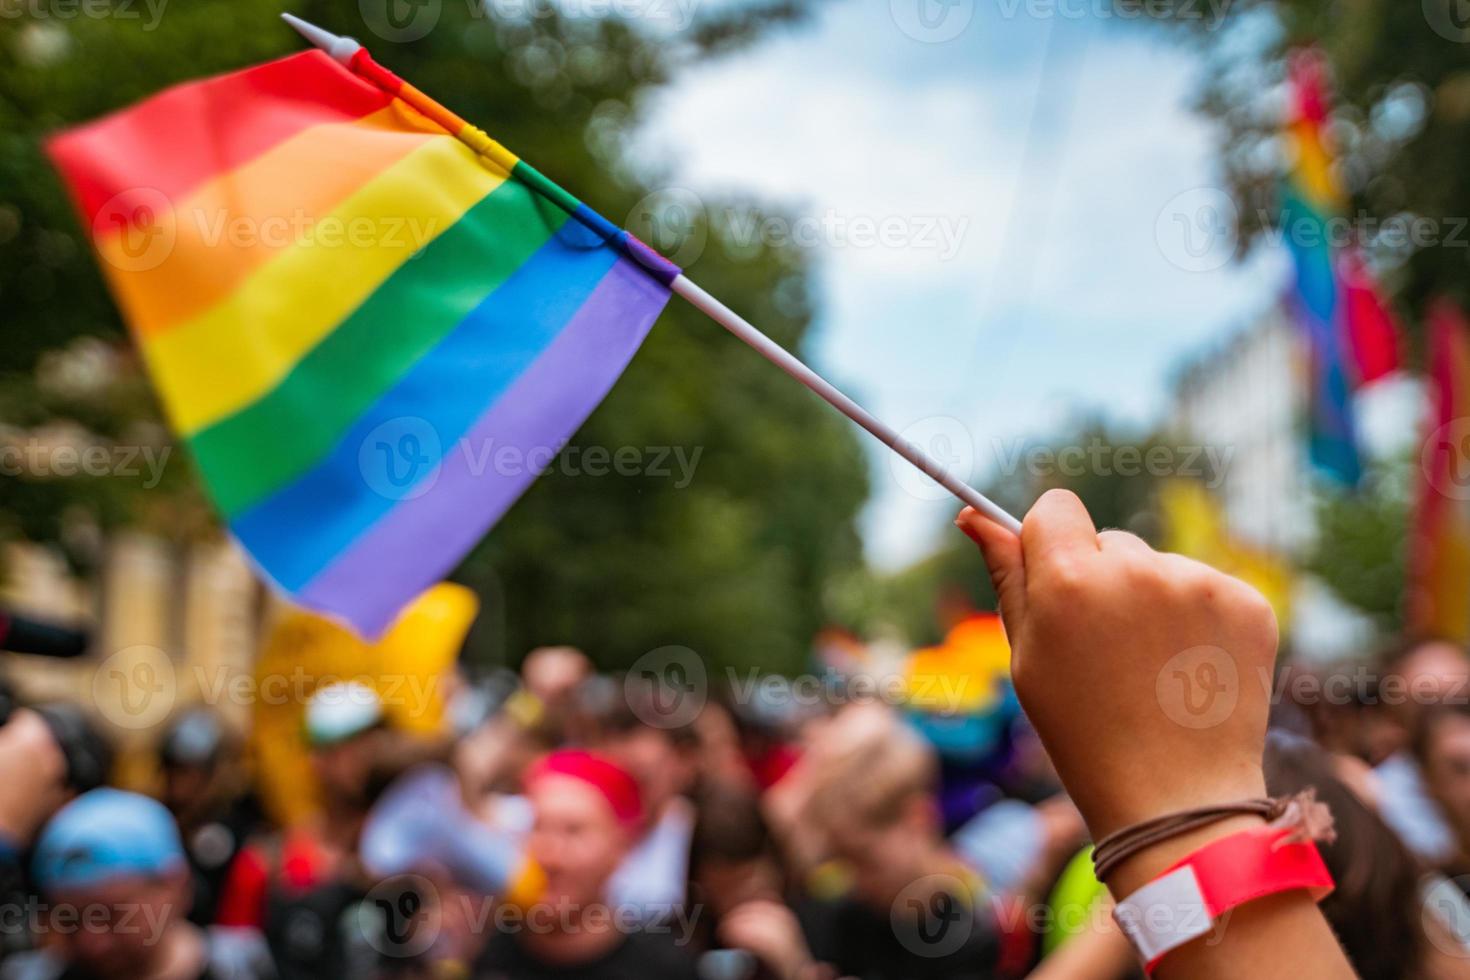 mano sostenga una bandera gay lgbt en el festival del desfile del orgullo gay lgbt foto